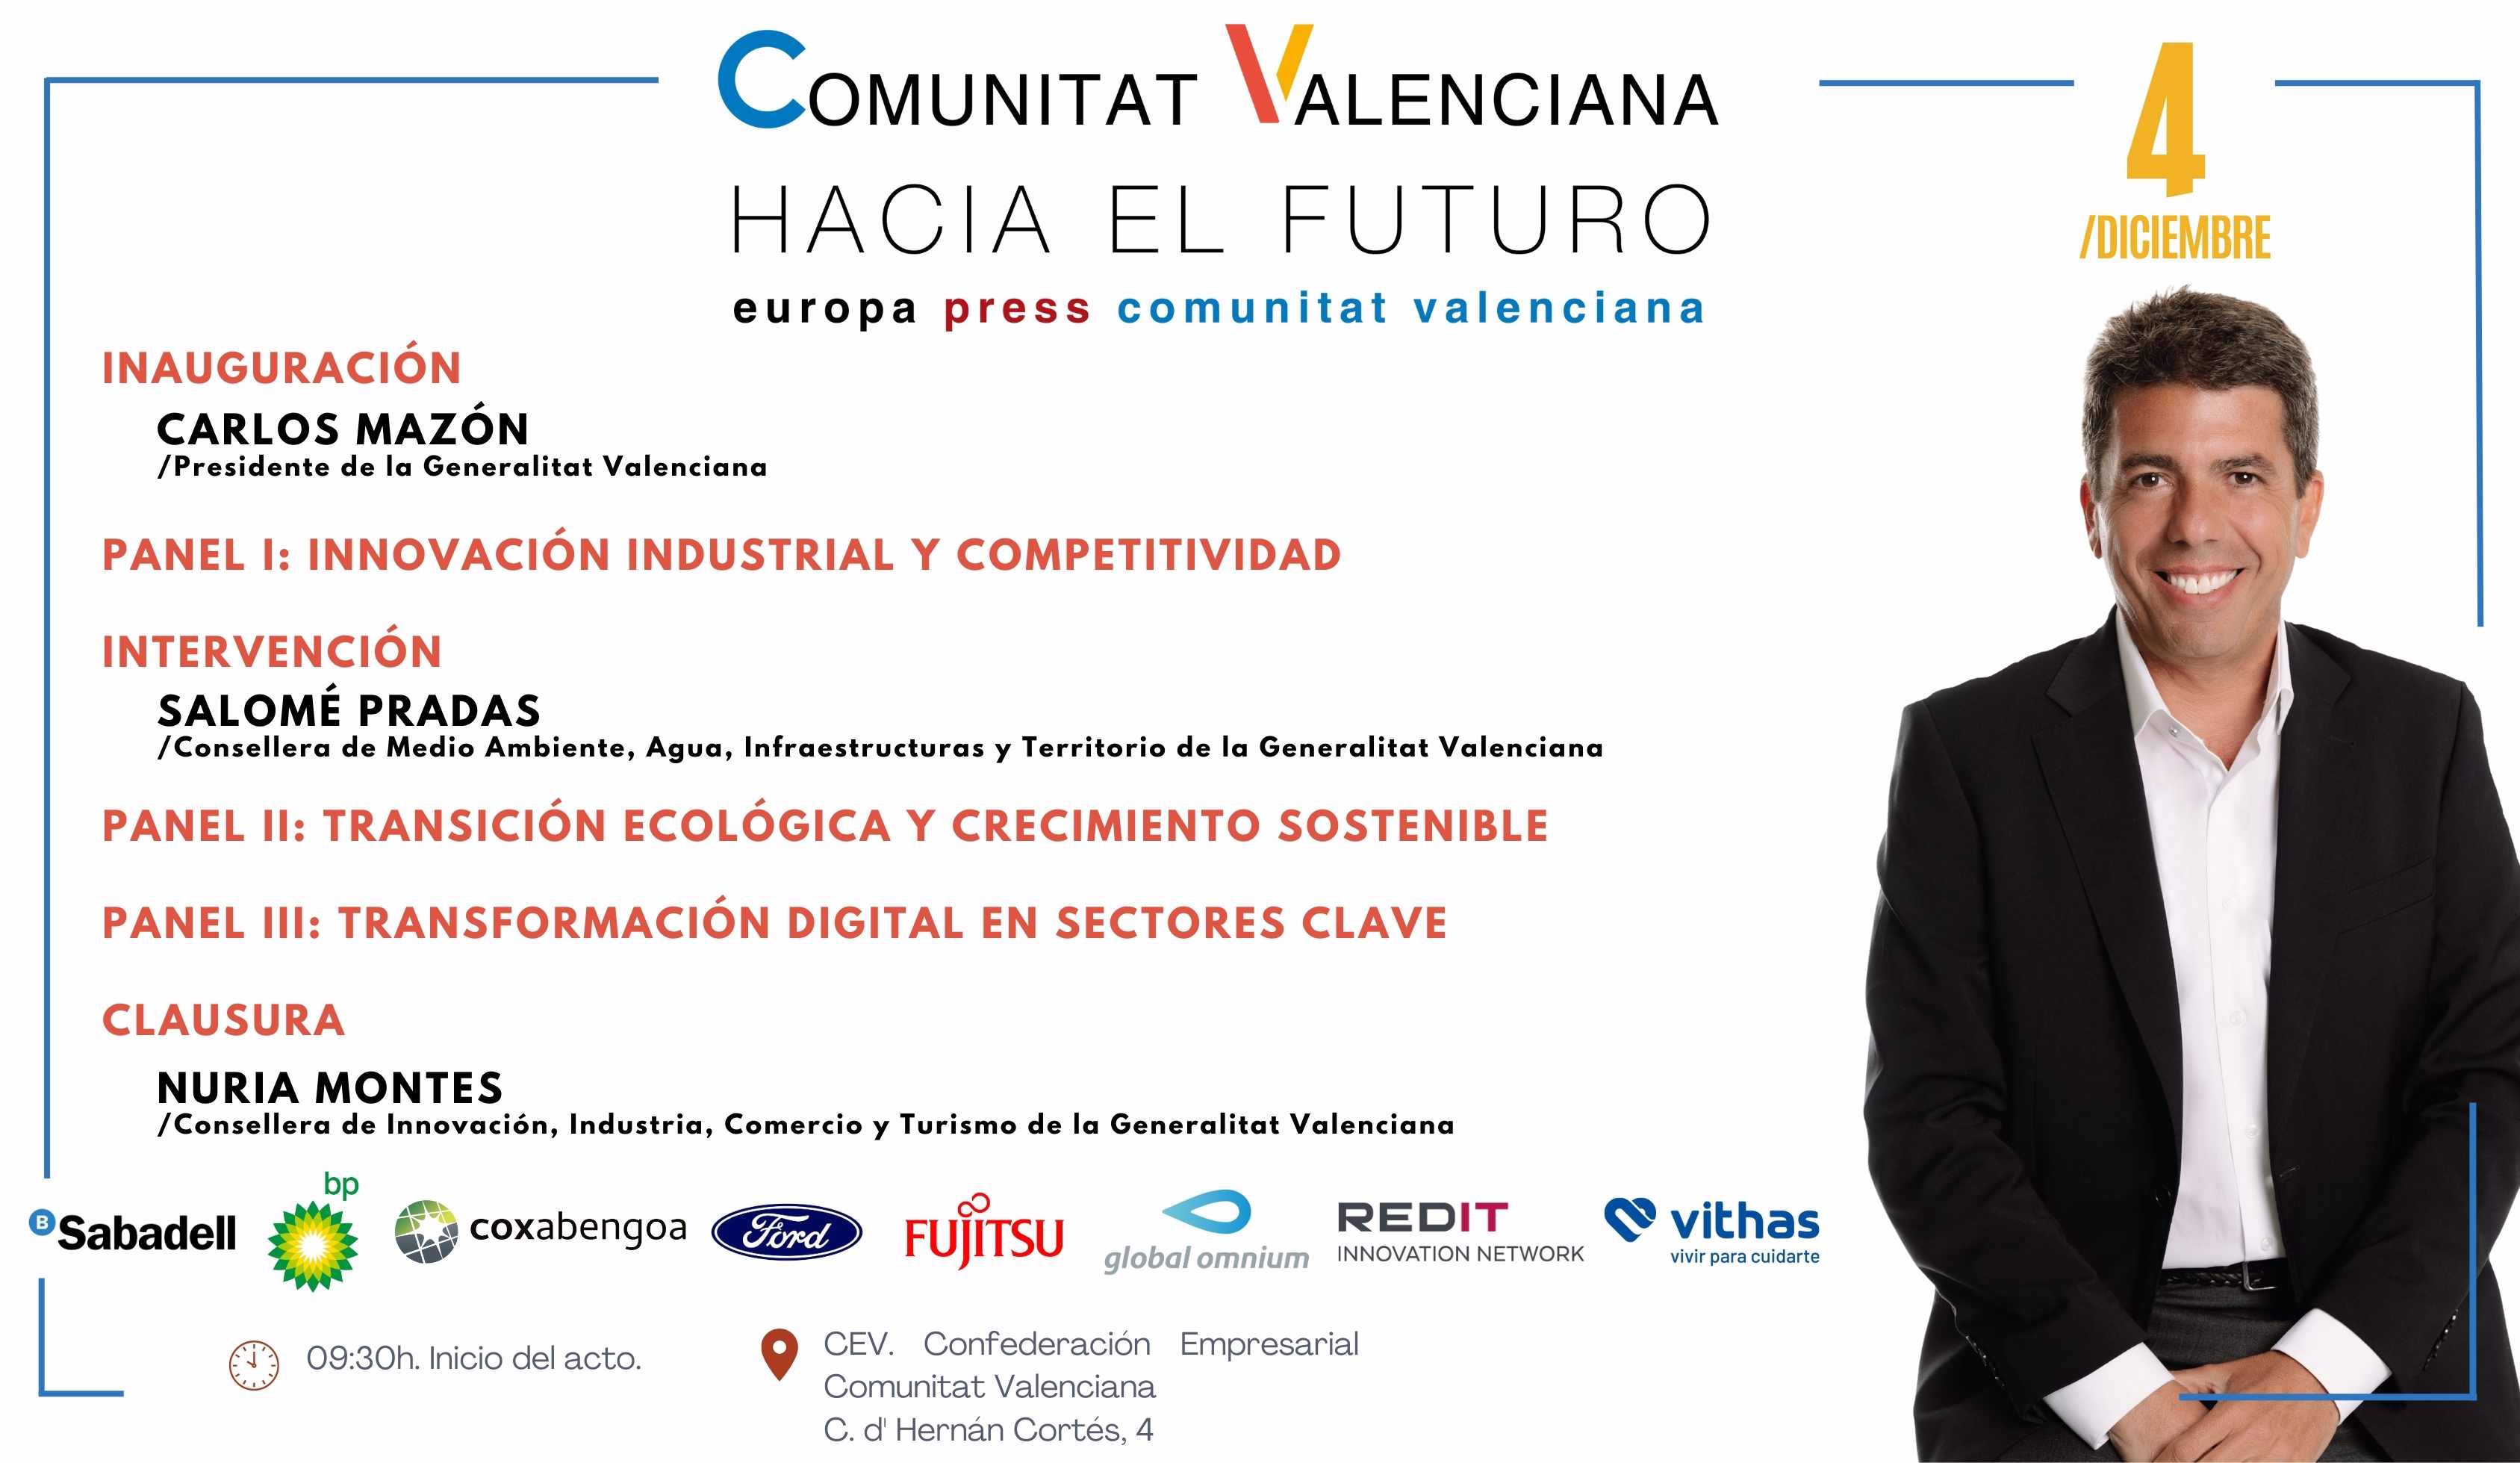 Comunitat Valenciana hacia el futuro